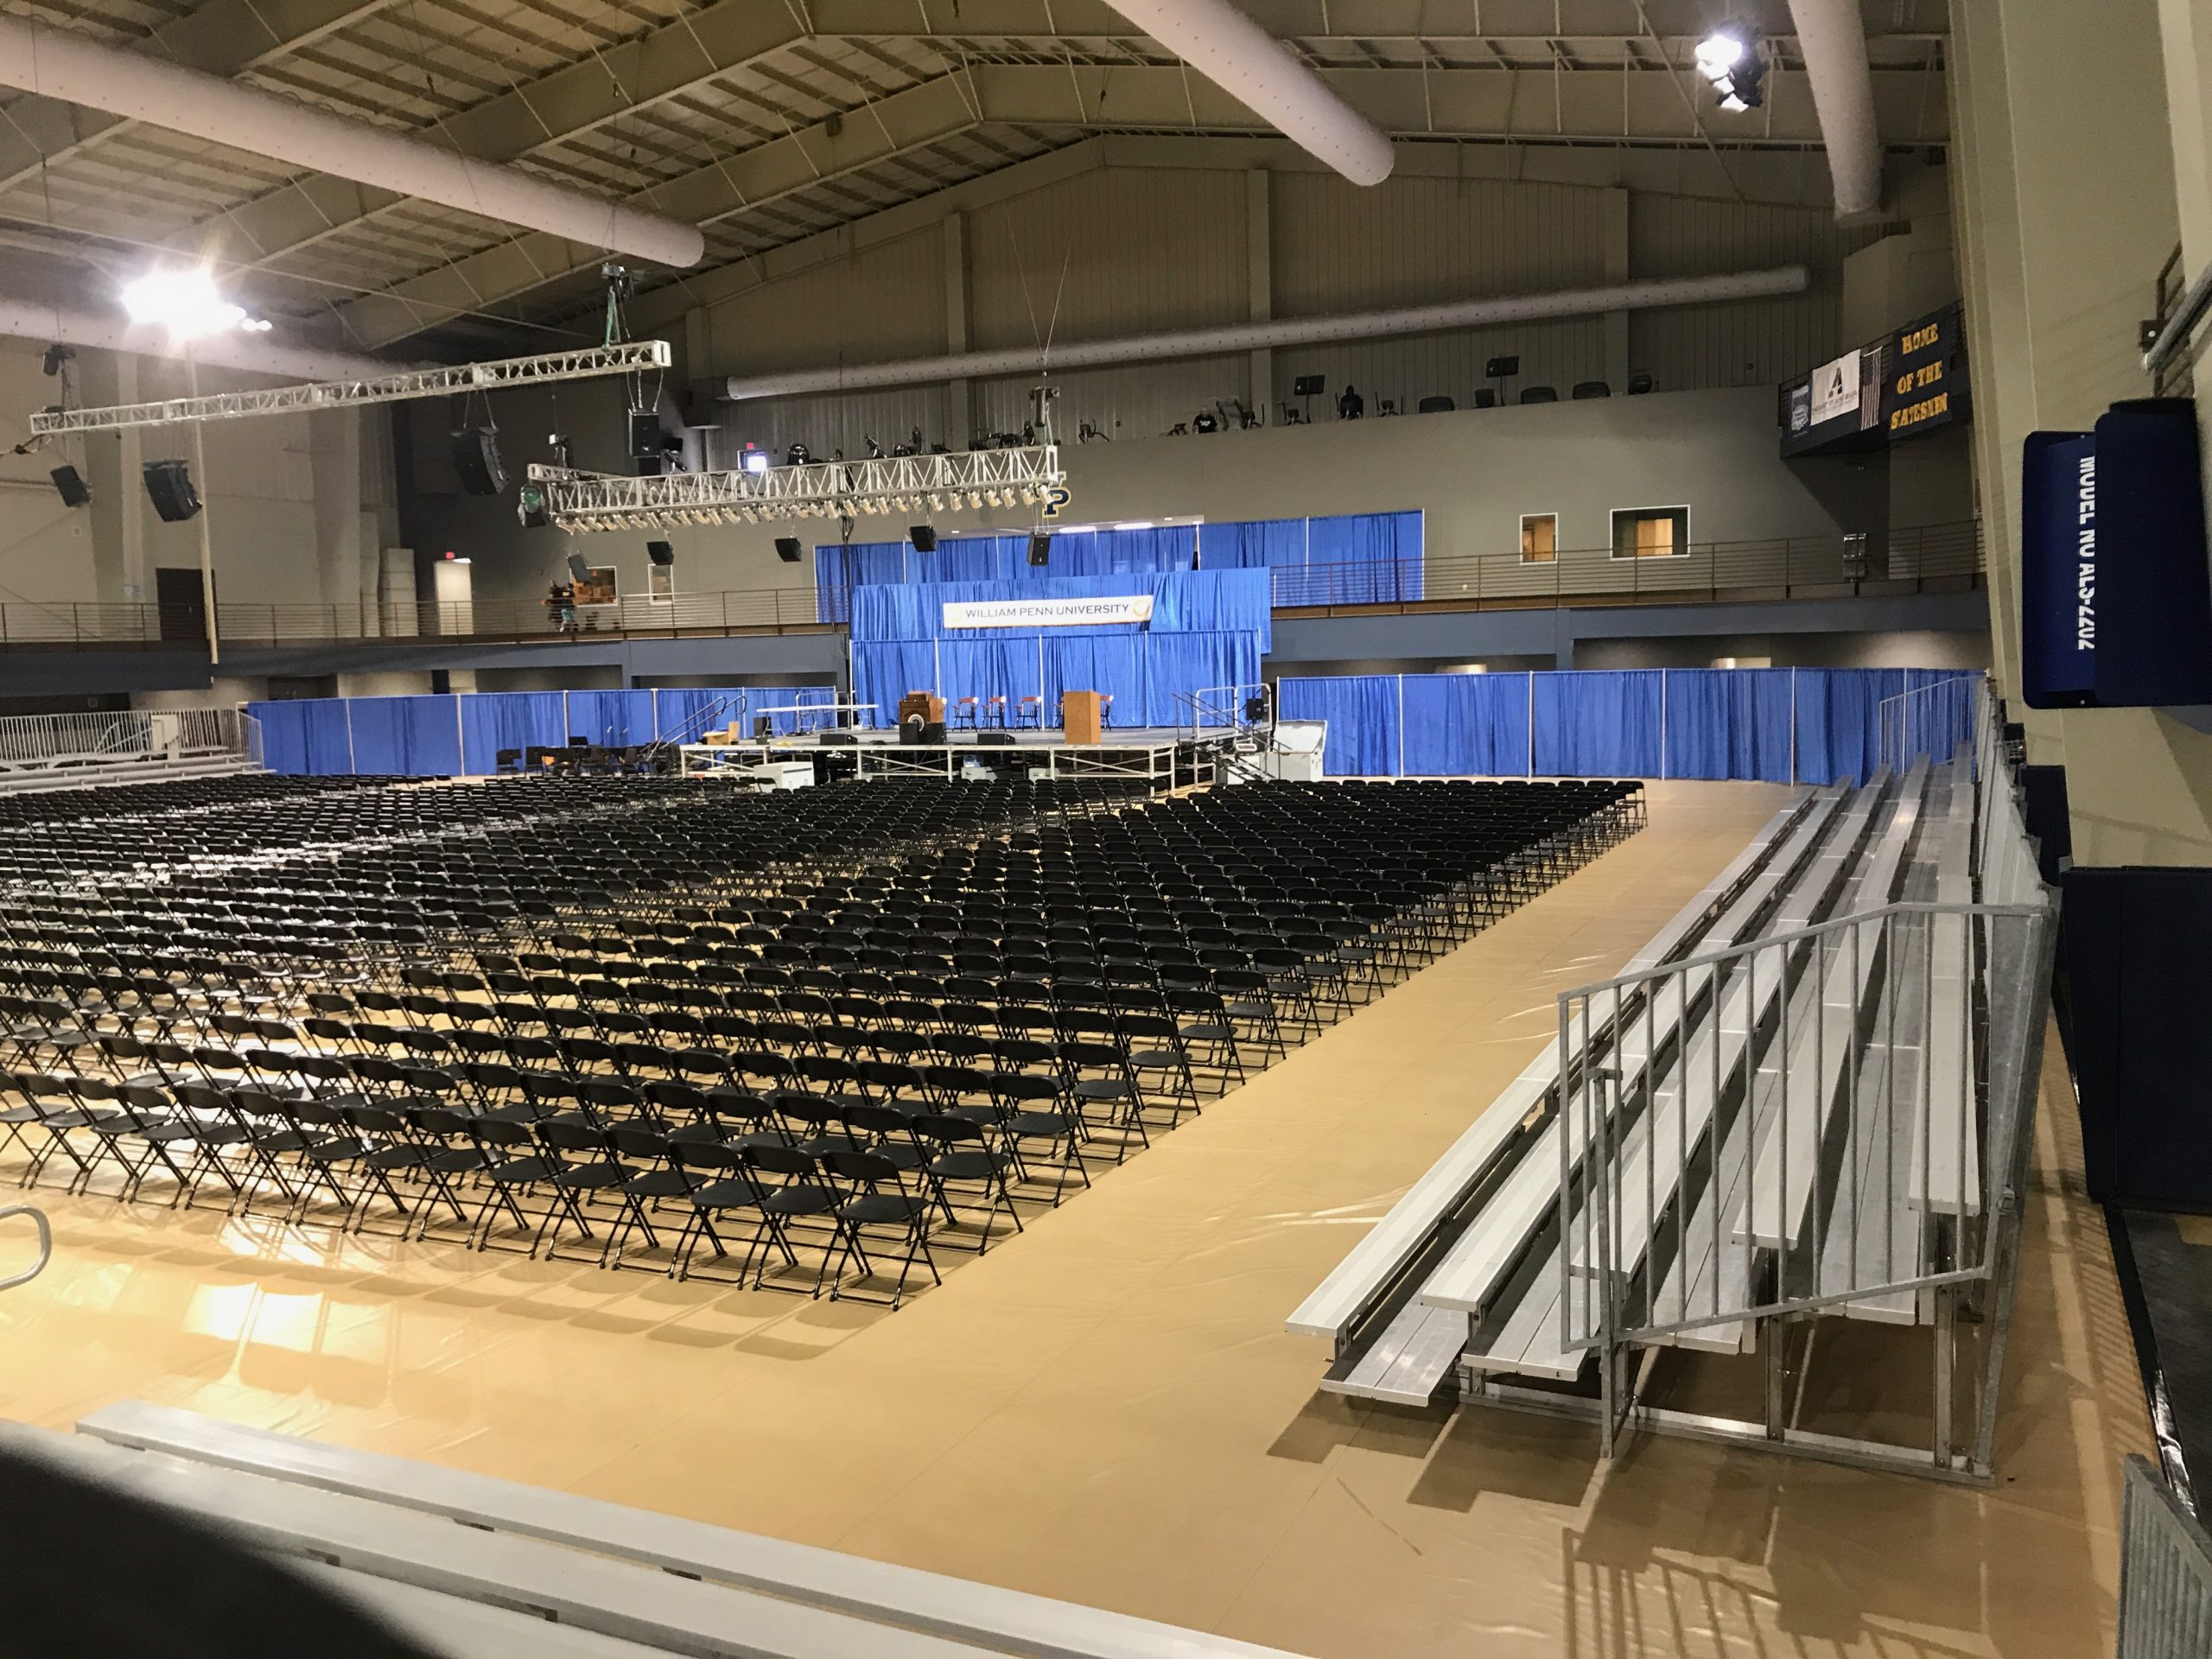 2017 Graduation at William Penn University in Oskaloosa, Iowa